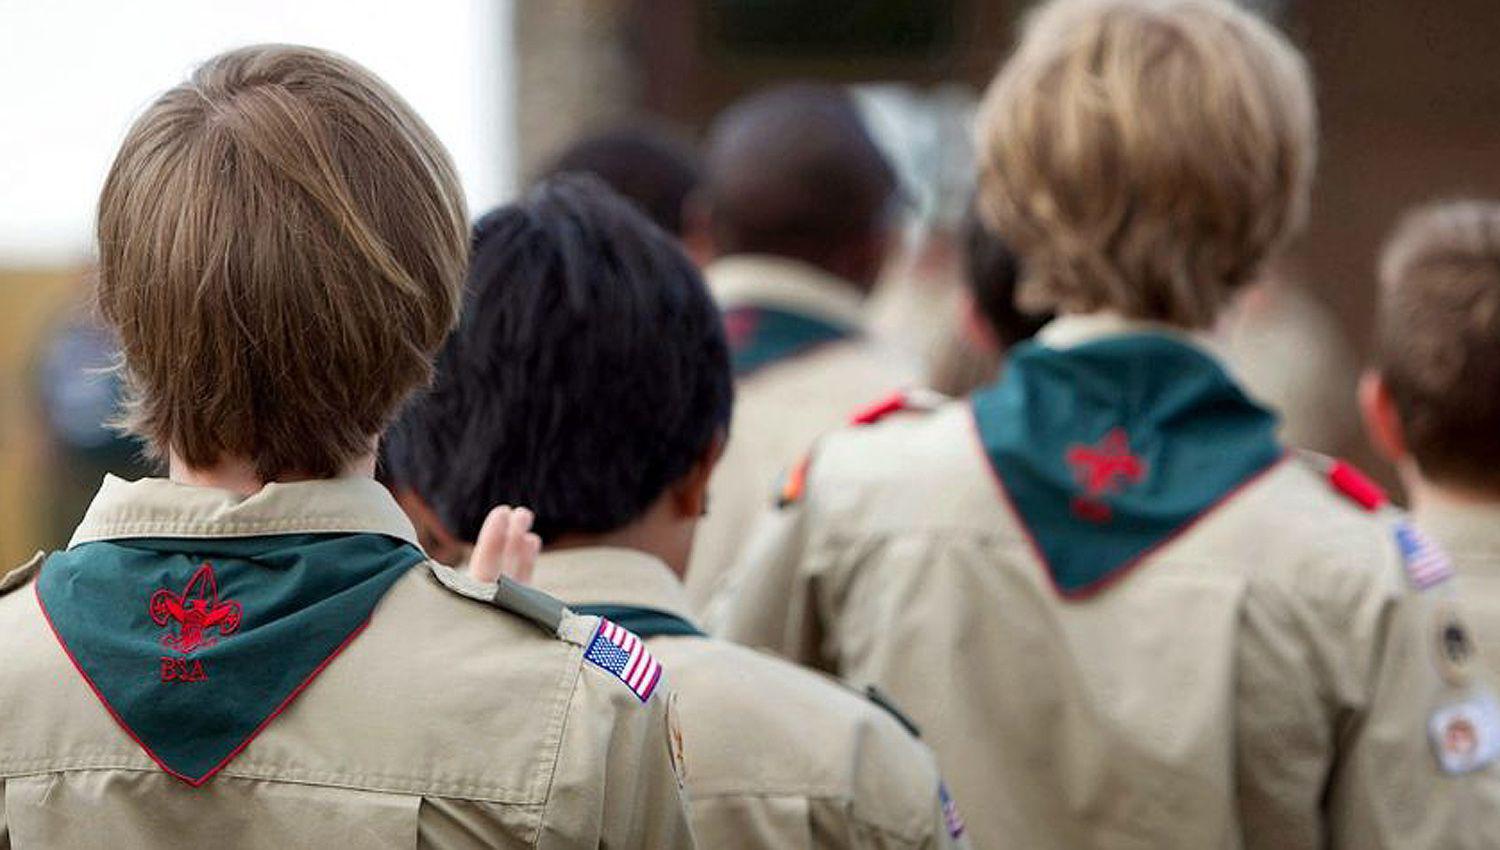 Reciben avalancha de denuncias por abusos sexuales en los Boy Scouts